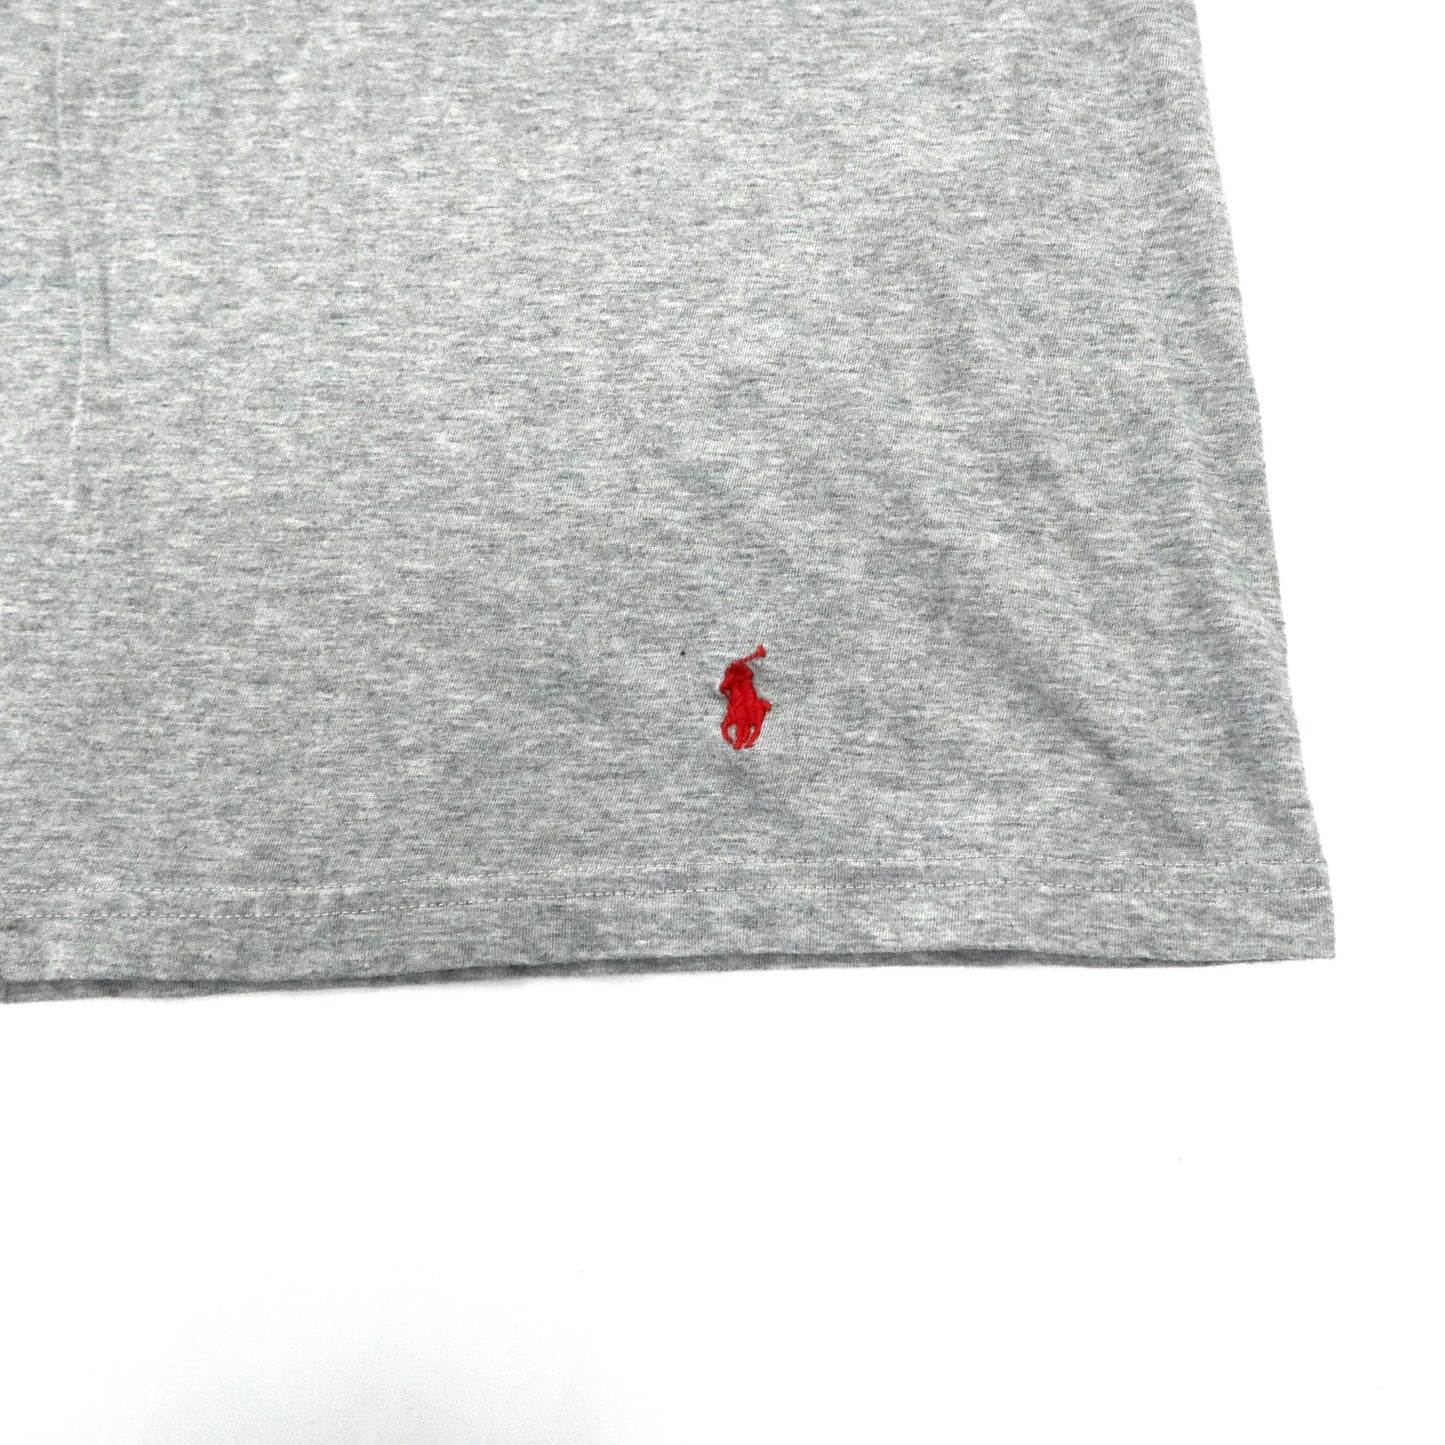 POLO RALPH LAUREN ビッグサイズTシャツ 2XL グレー コットン CLASSIC FIT スモールポニー刺繍